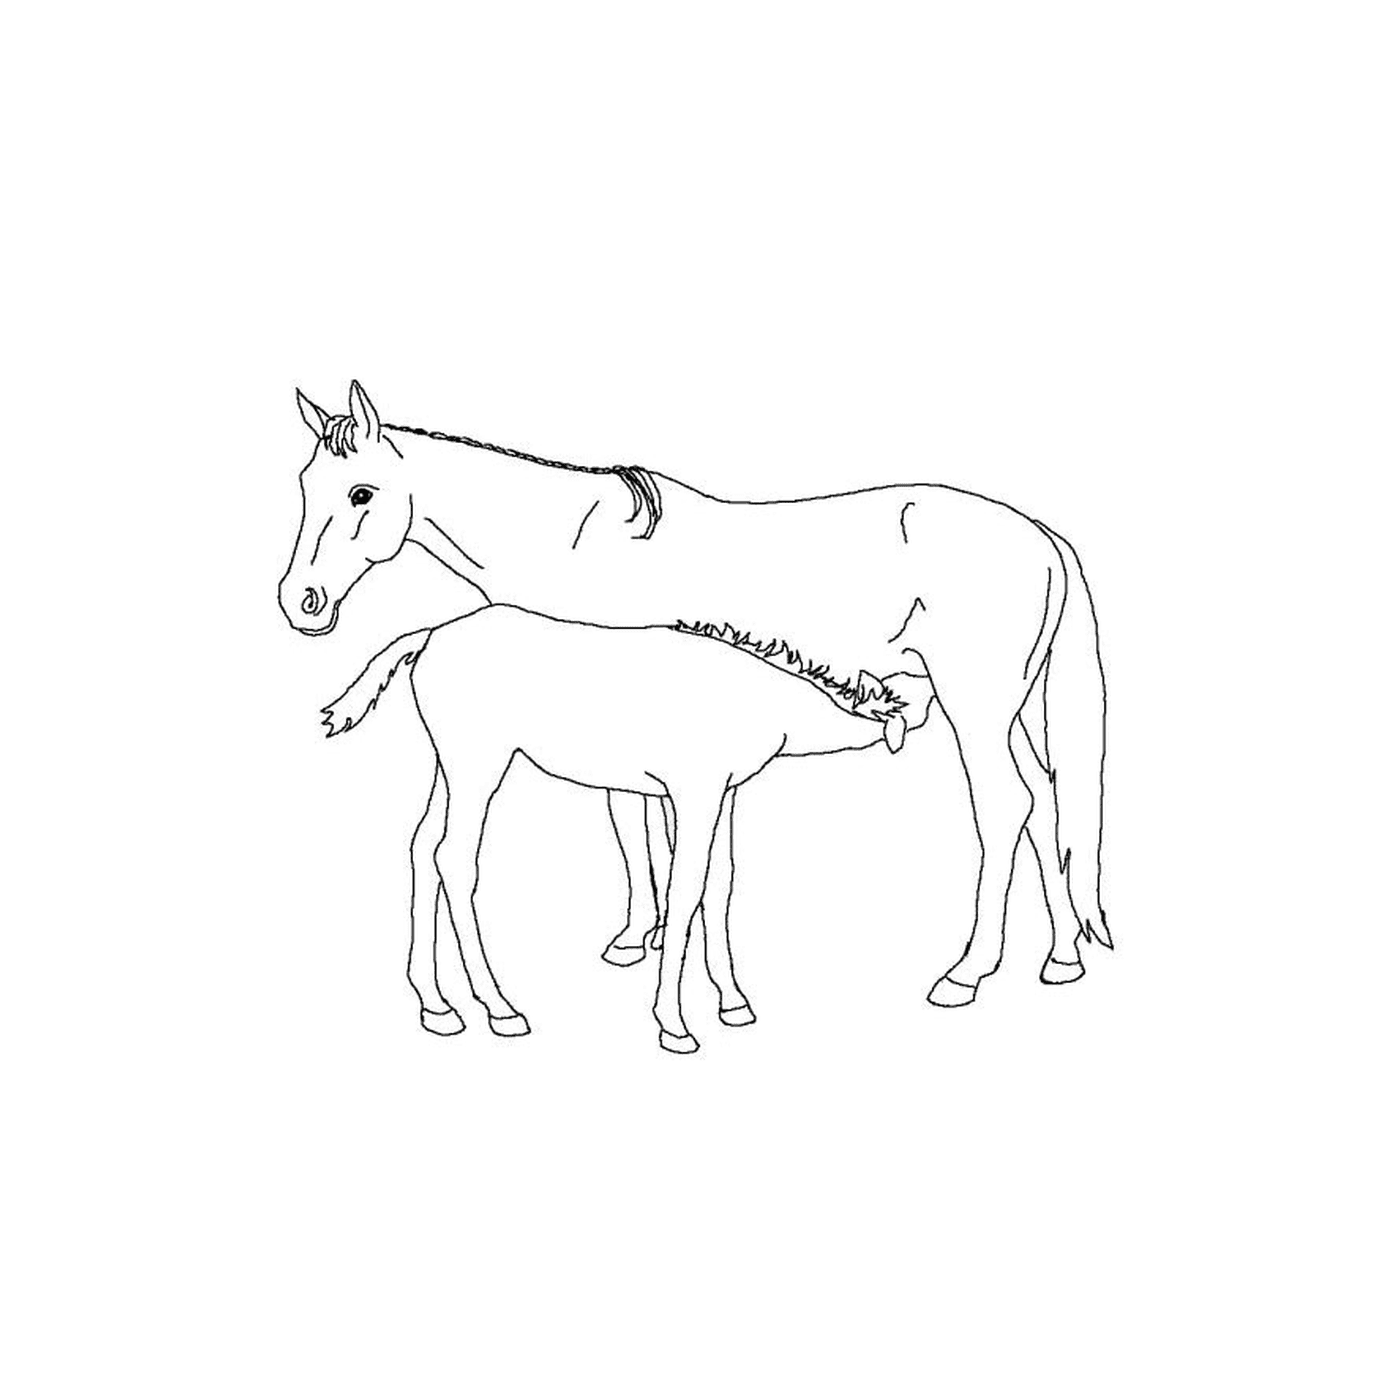  Geflügelpferde - Ein Pferd und ein Fohlen nebeneinander 